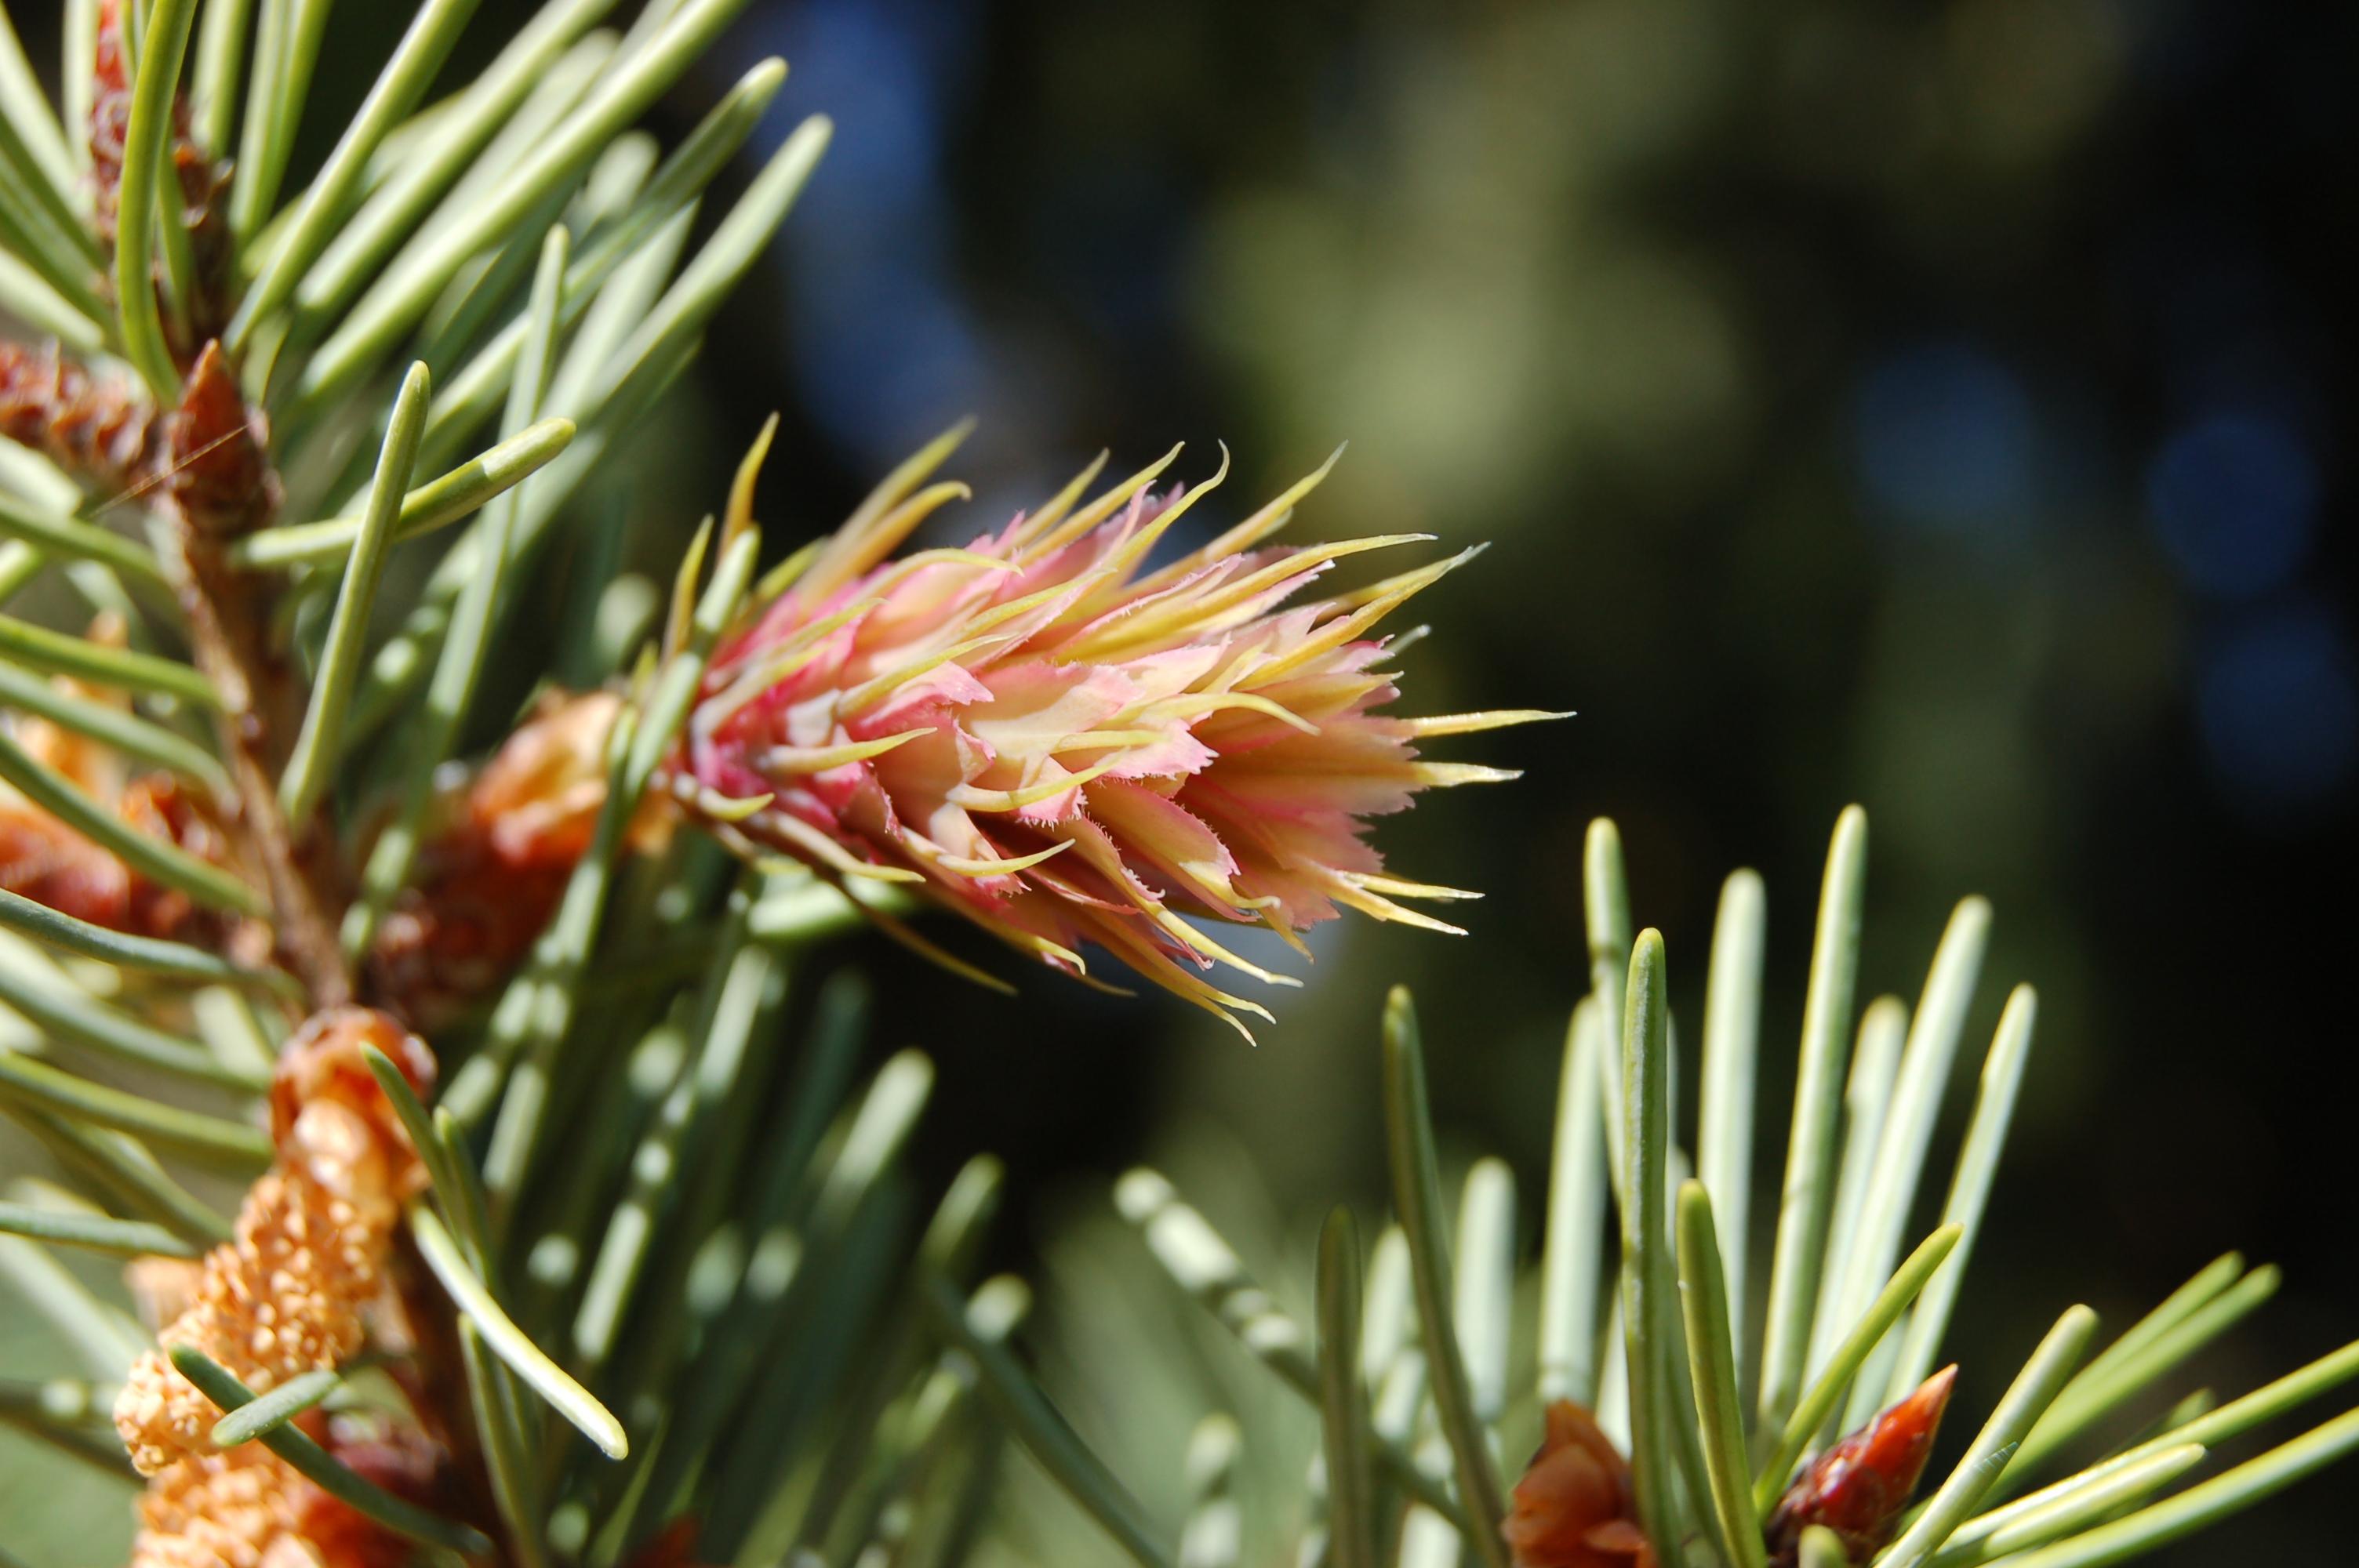 A Douglas-fir flower